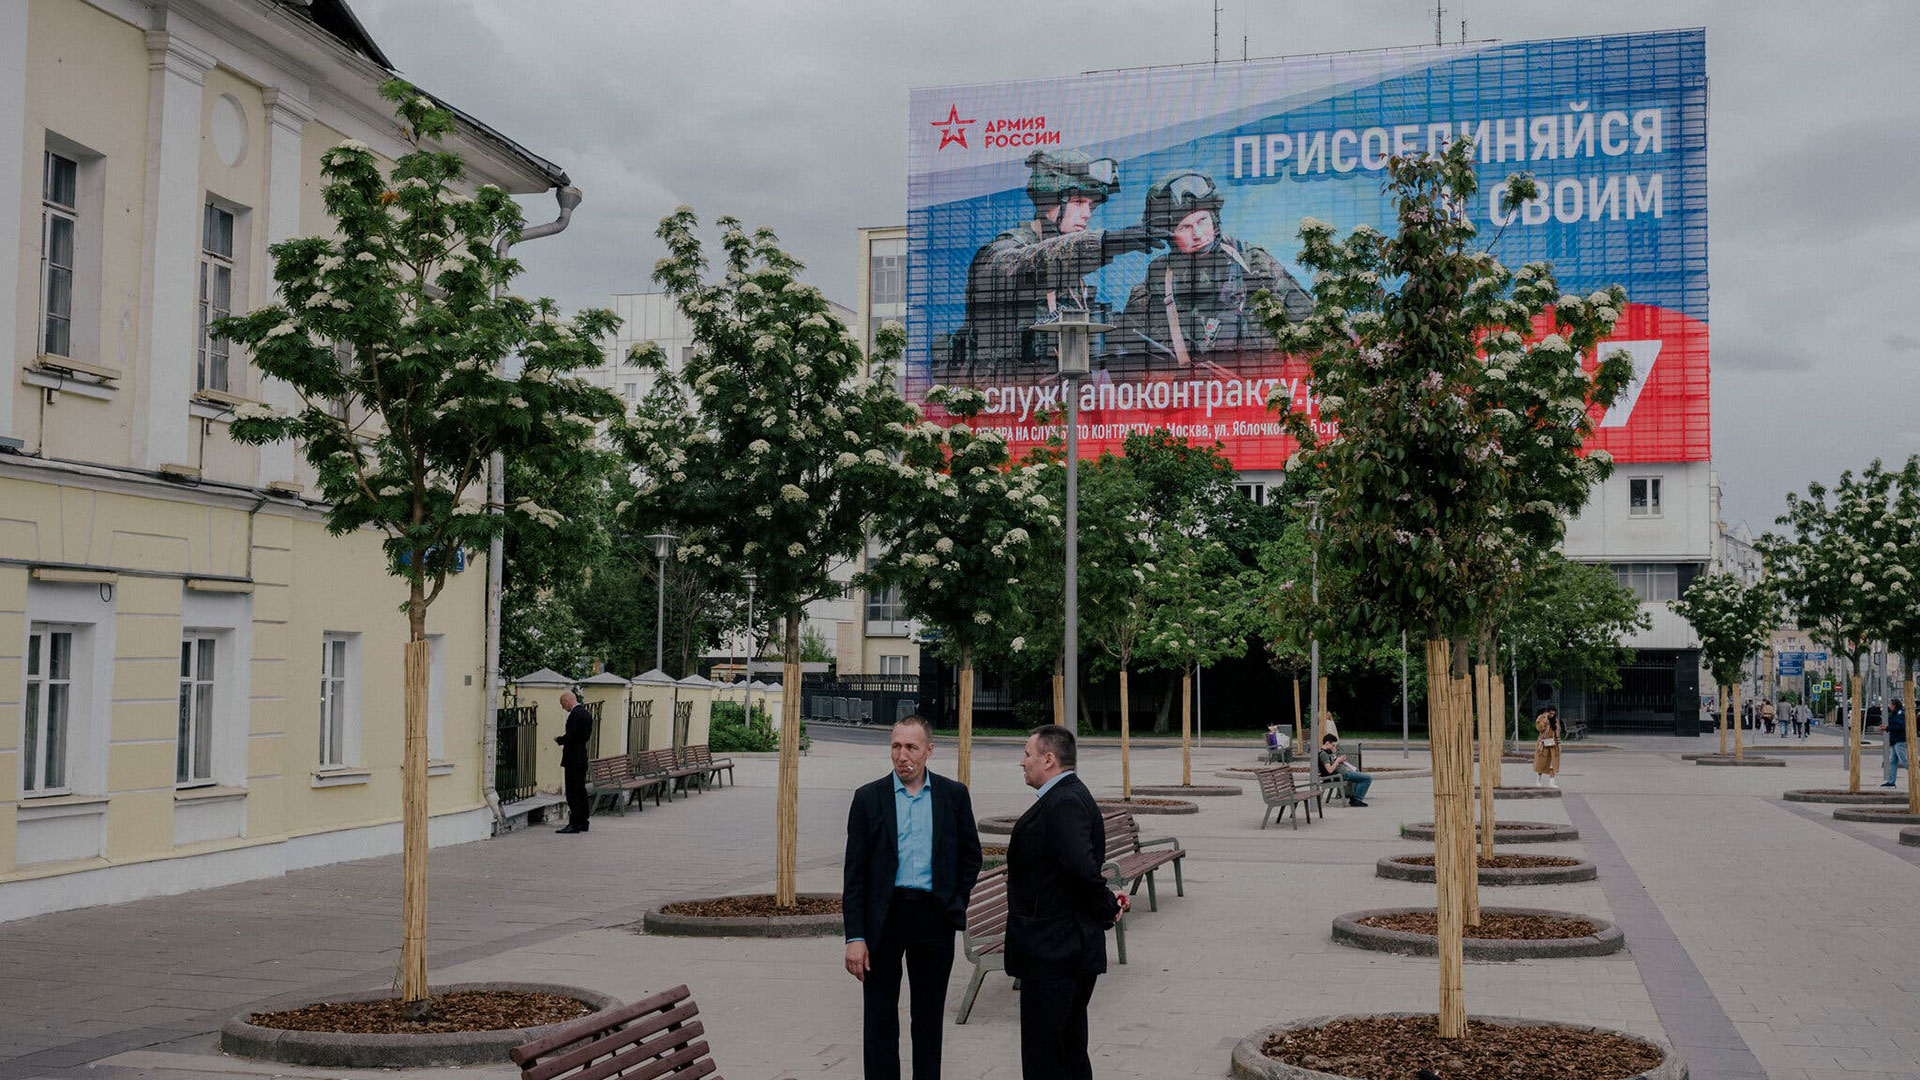 Un anuncio de reclutamiento para el ejército ruso en una valla publicitaria de Moscú. Nanna Heitmann para The New York Times